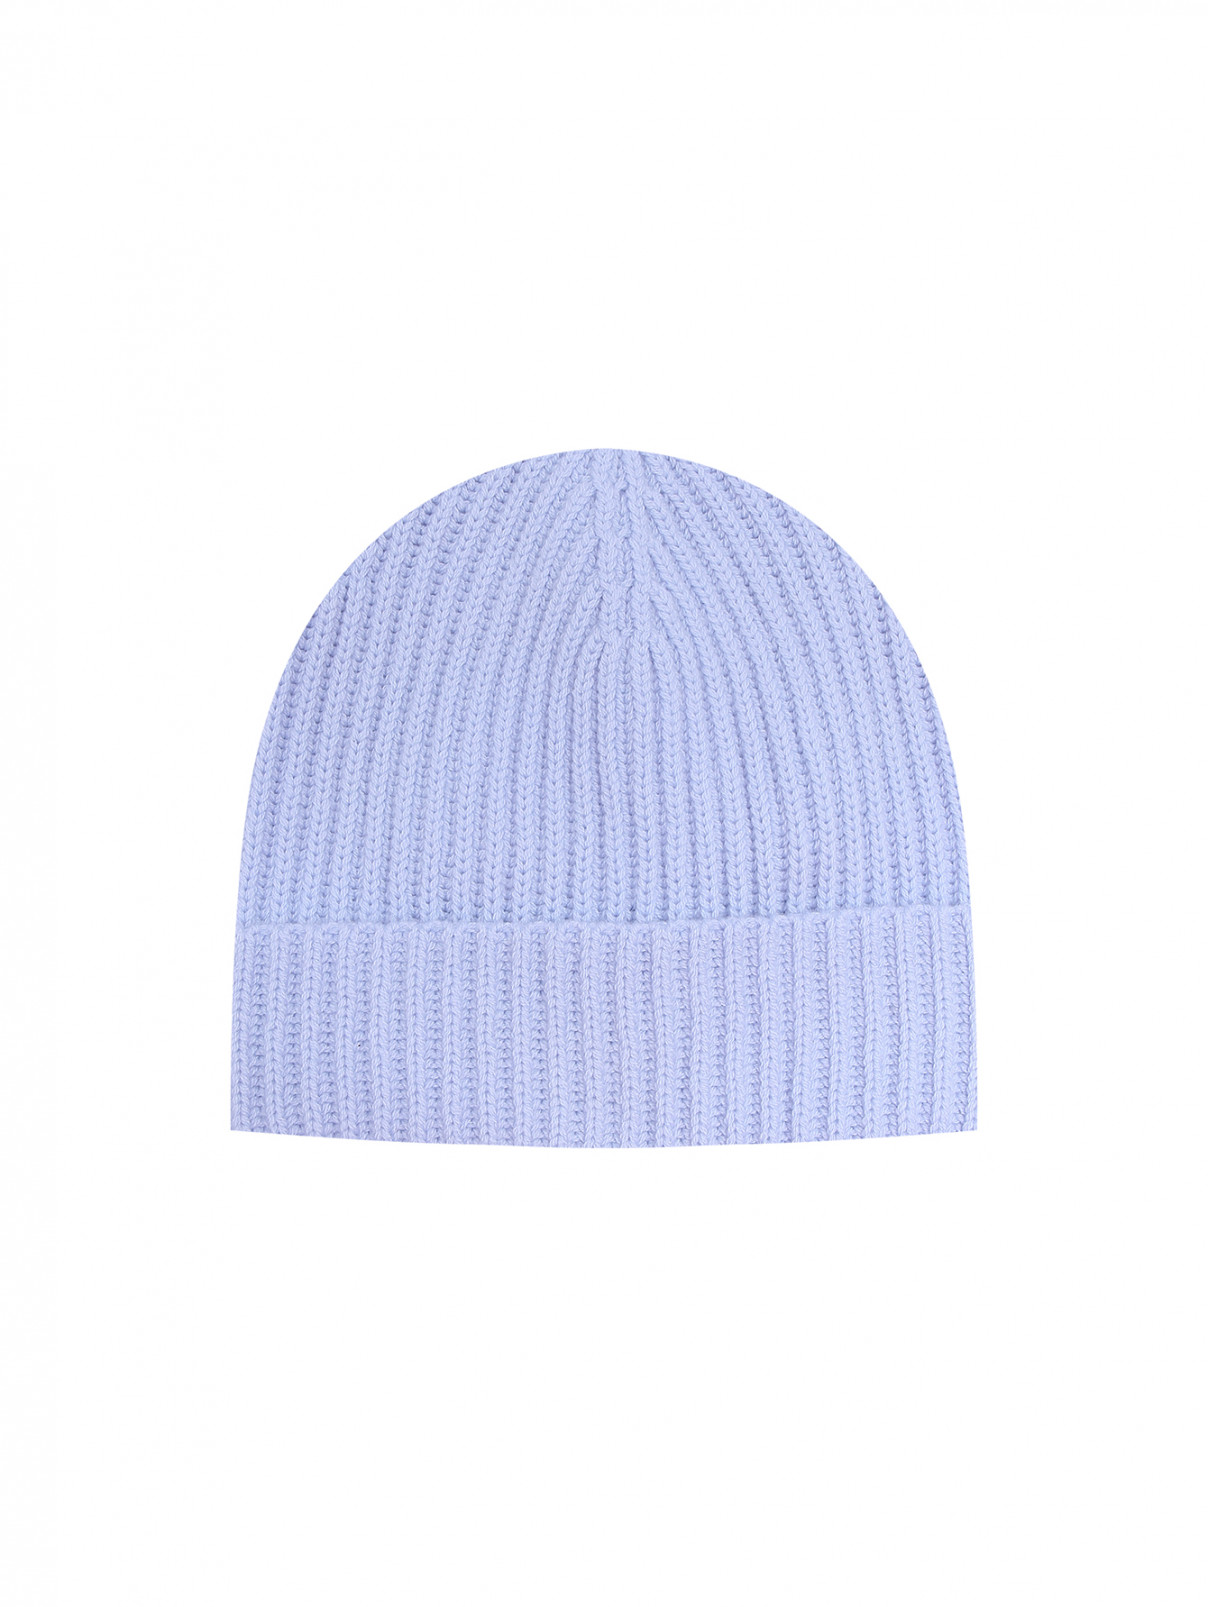 Однотонная шапка из шерсти и кашемира Dorothee Schumacher  –  Общий вид  – Цвет:  Синий